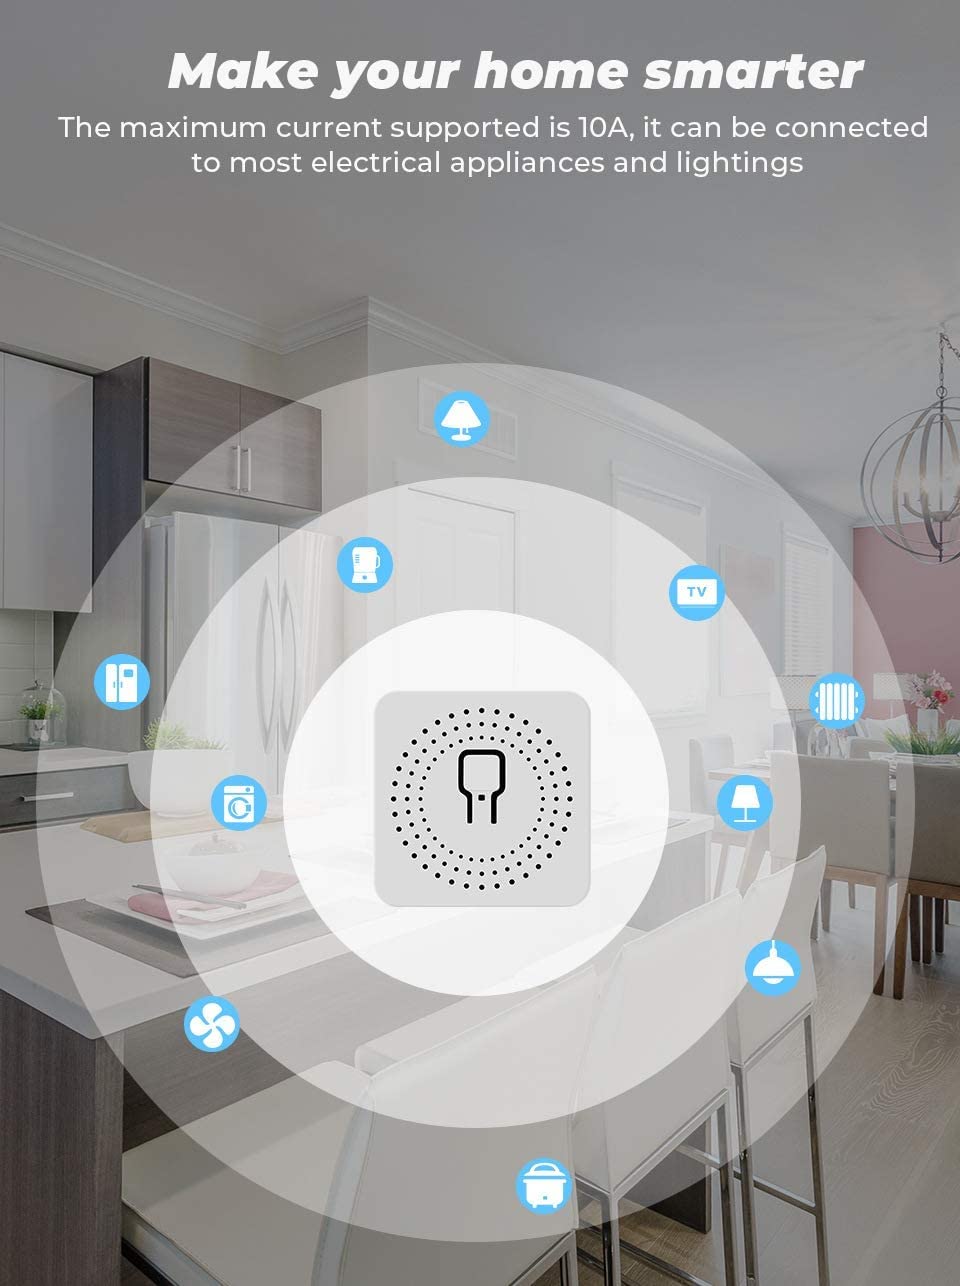 Relé Wifi 2 Ch Inalambrico 12V Control 220V App Smart Life Smart Home